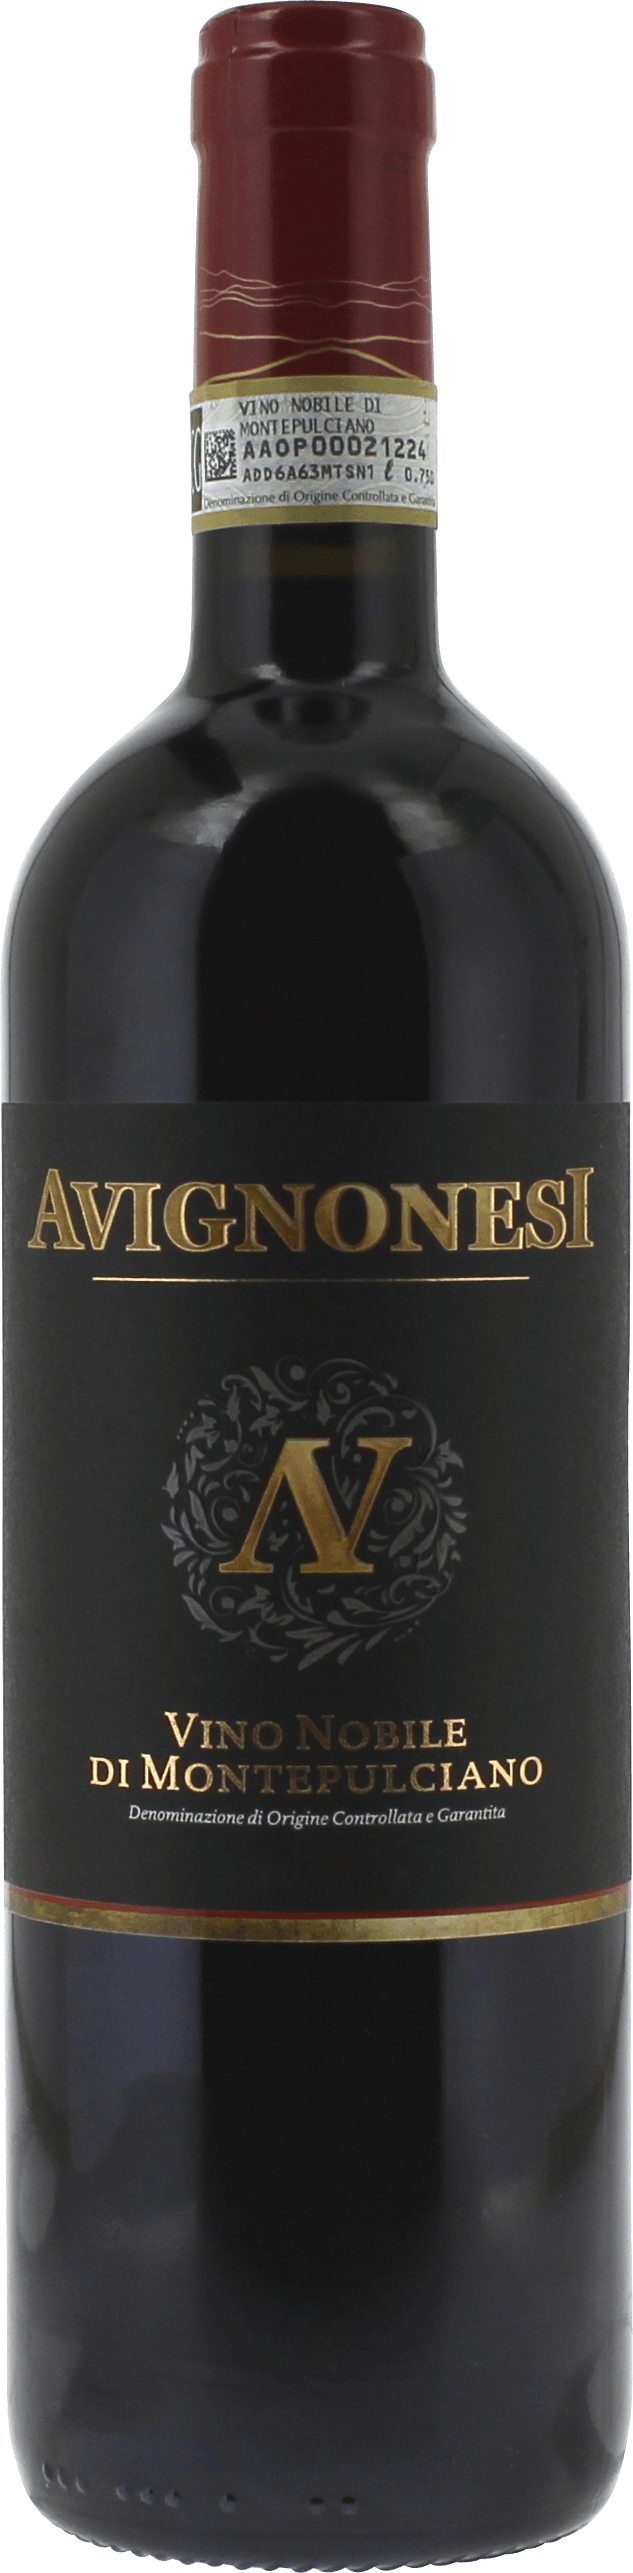 Avignonesi -  rosso di montepulciano prugnolo gentile 2018  Italie, Vin italien